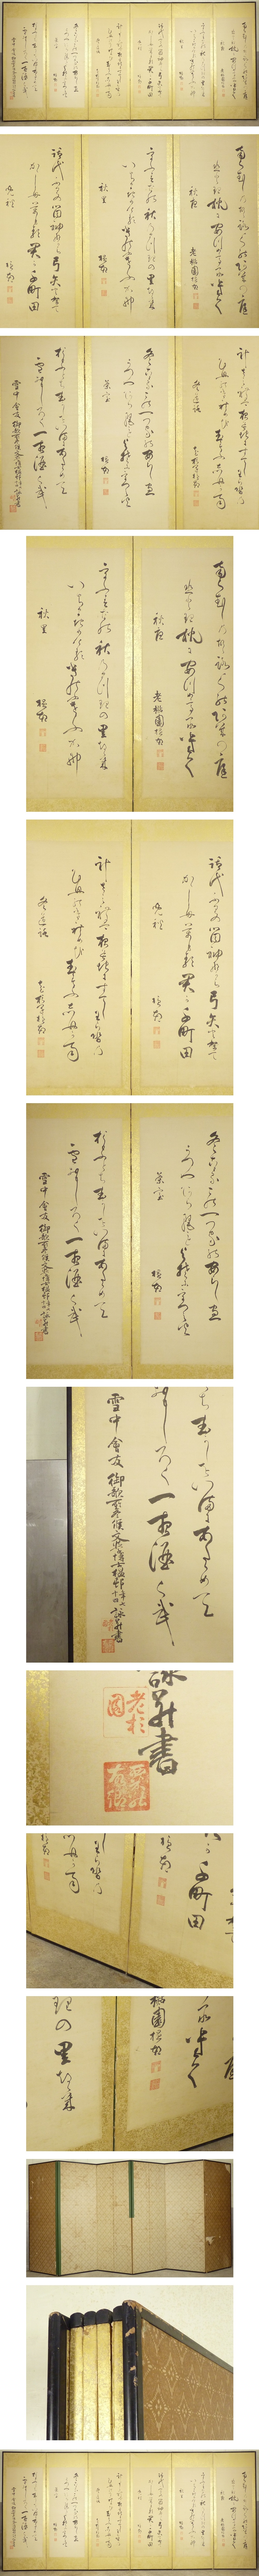 【再入荷新品】大日本帝国文学博士 小杉温邨 筆 書 屏風 高さ 約172cm 六曲半双 絹本肉筆 書画 漢詩 掛軸